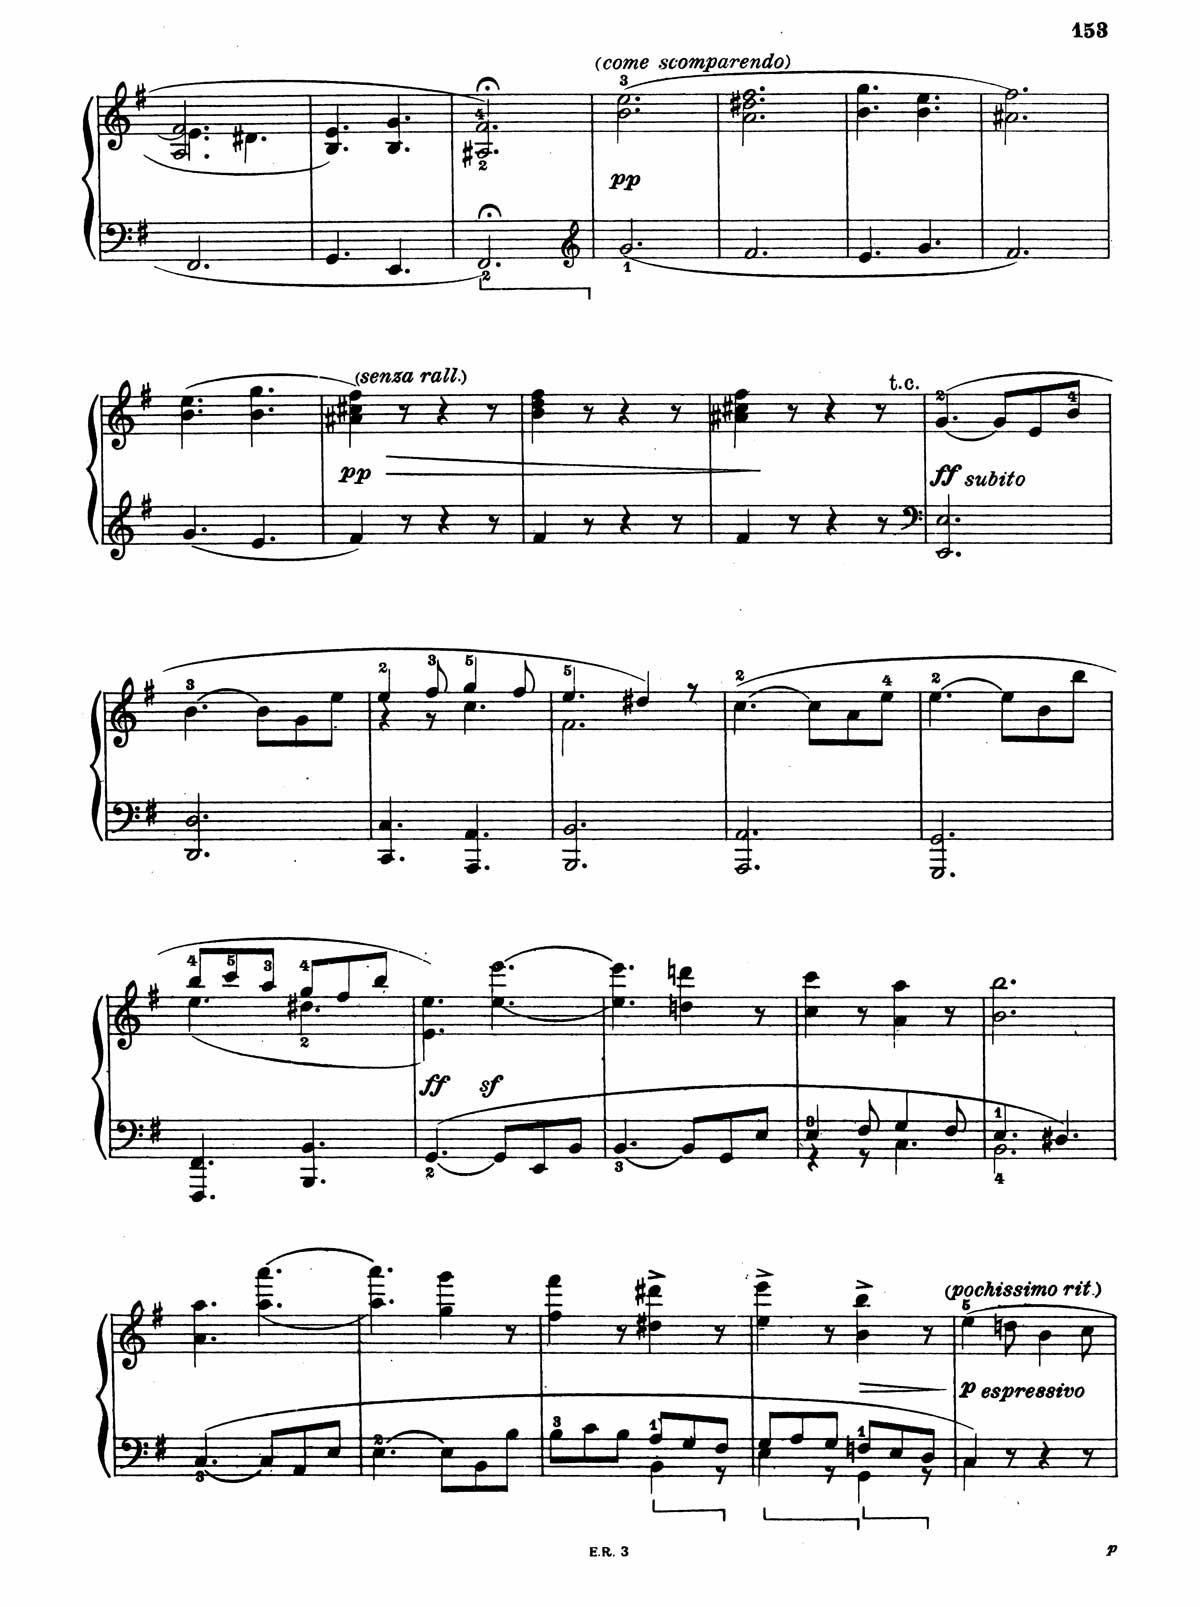 Beethoven Piano Sonata 30-10 sheet music